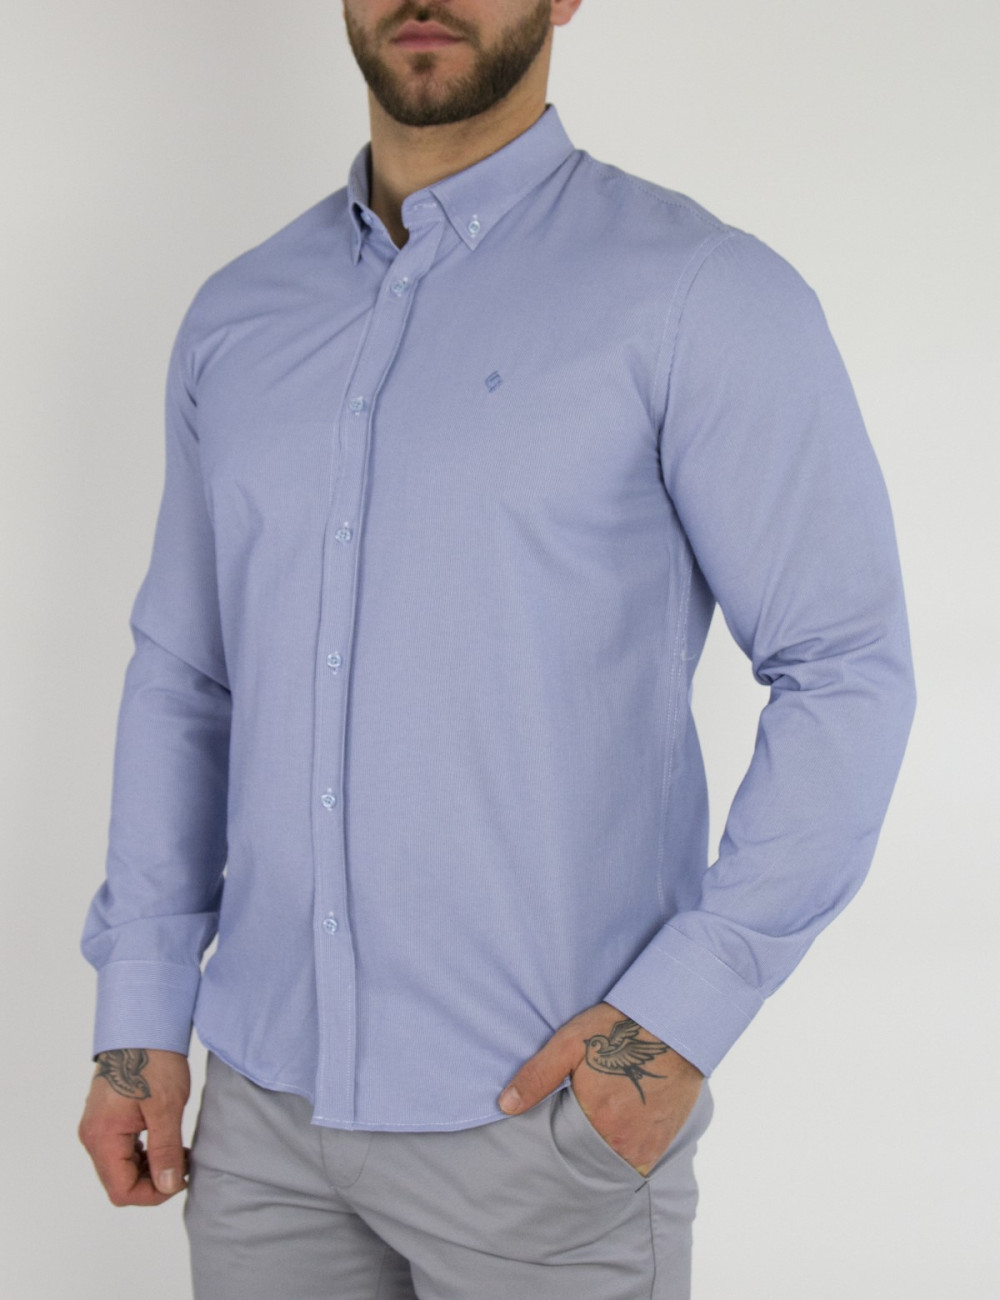 Ανδρικό βαμβακερό μπλε ριγέ πουκάμισο SL45B